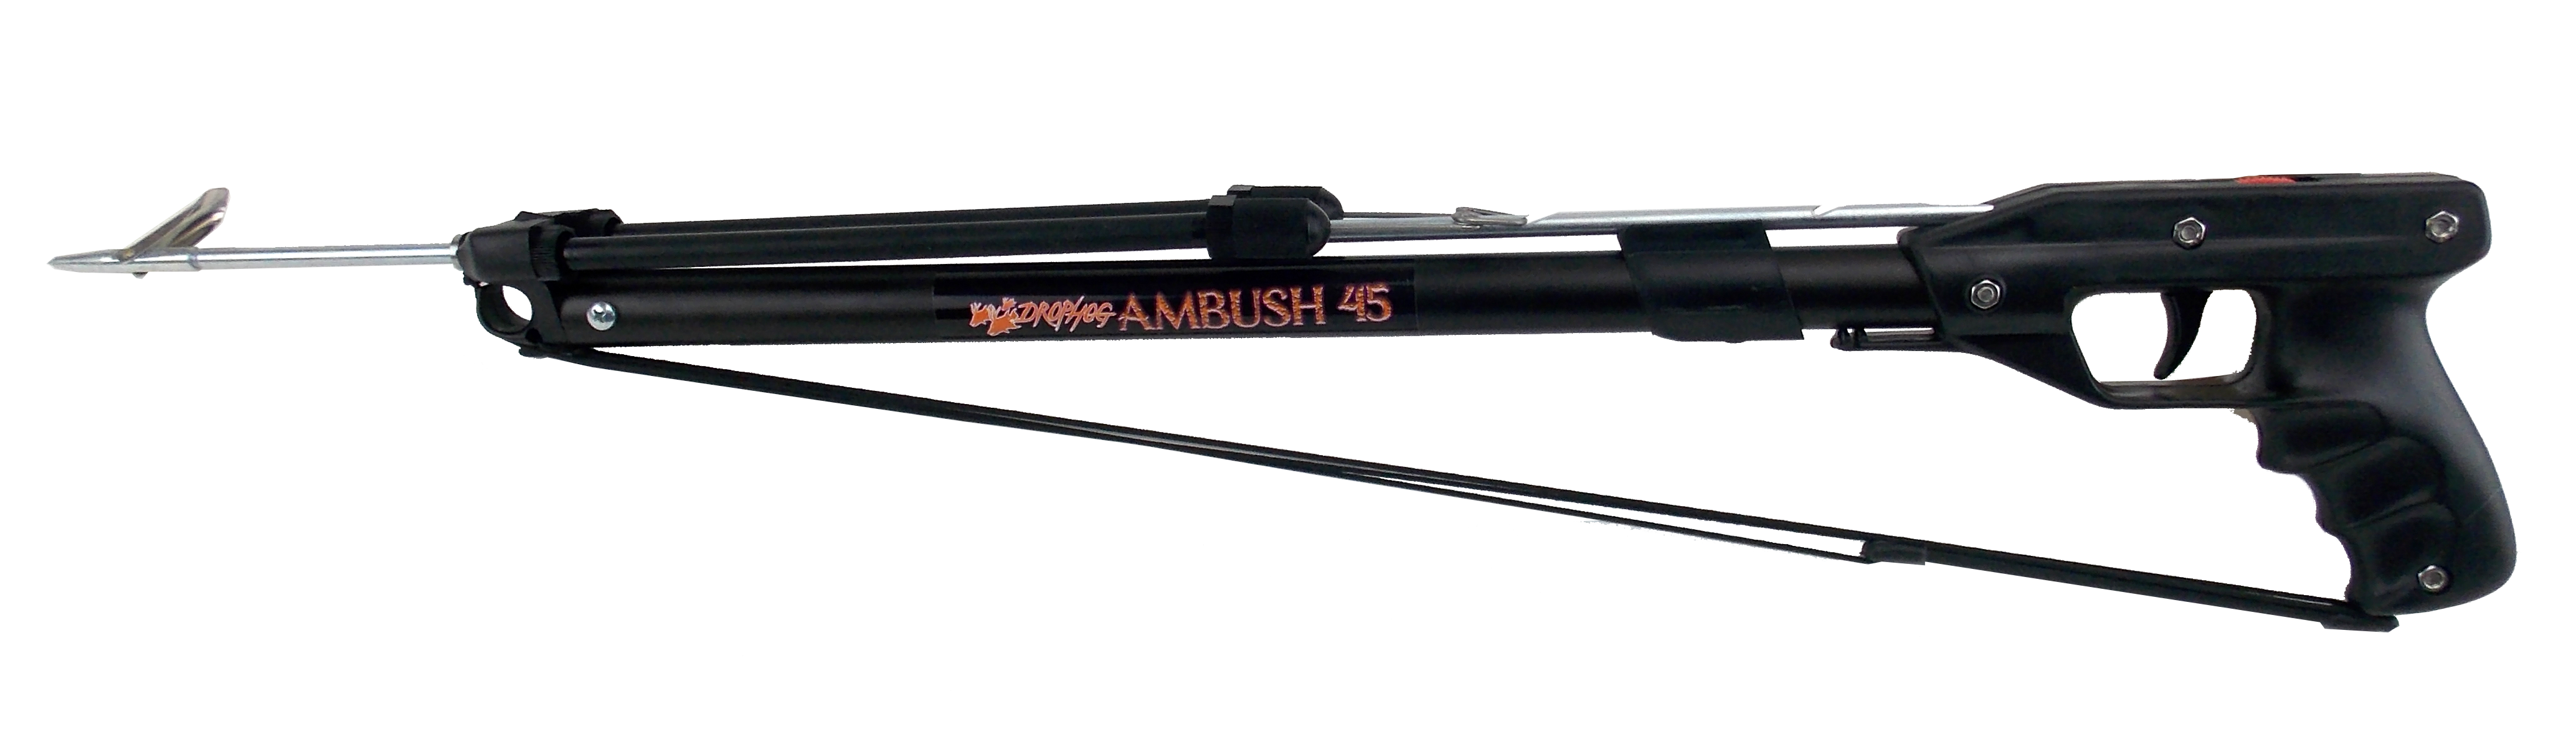 Drophog™ Spearfishing Ambush 45 Series - Blitz Speargun - SA Sports -  Outdoor Gear